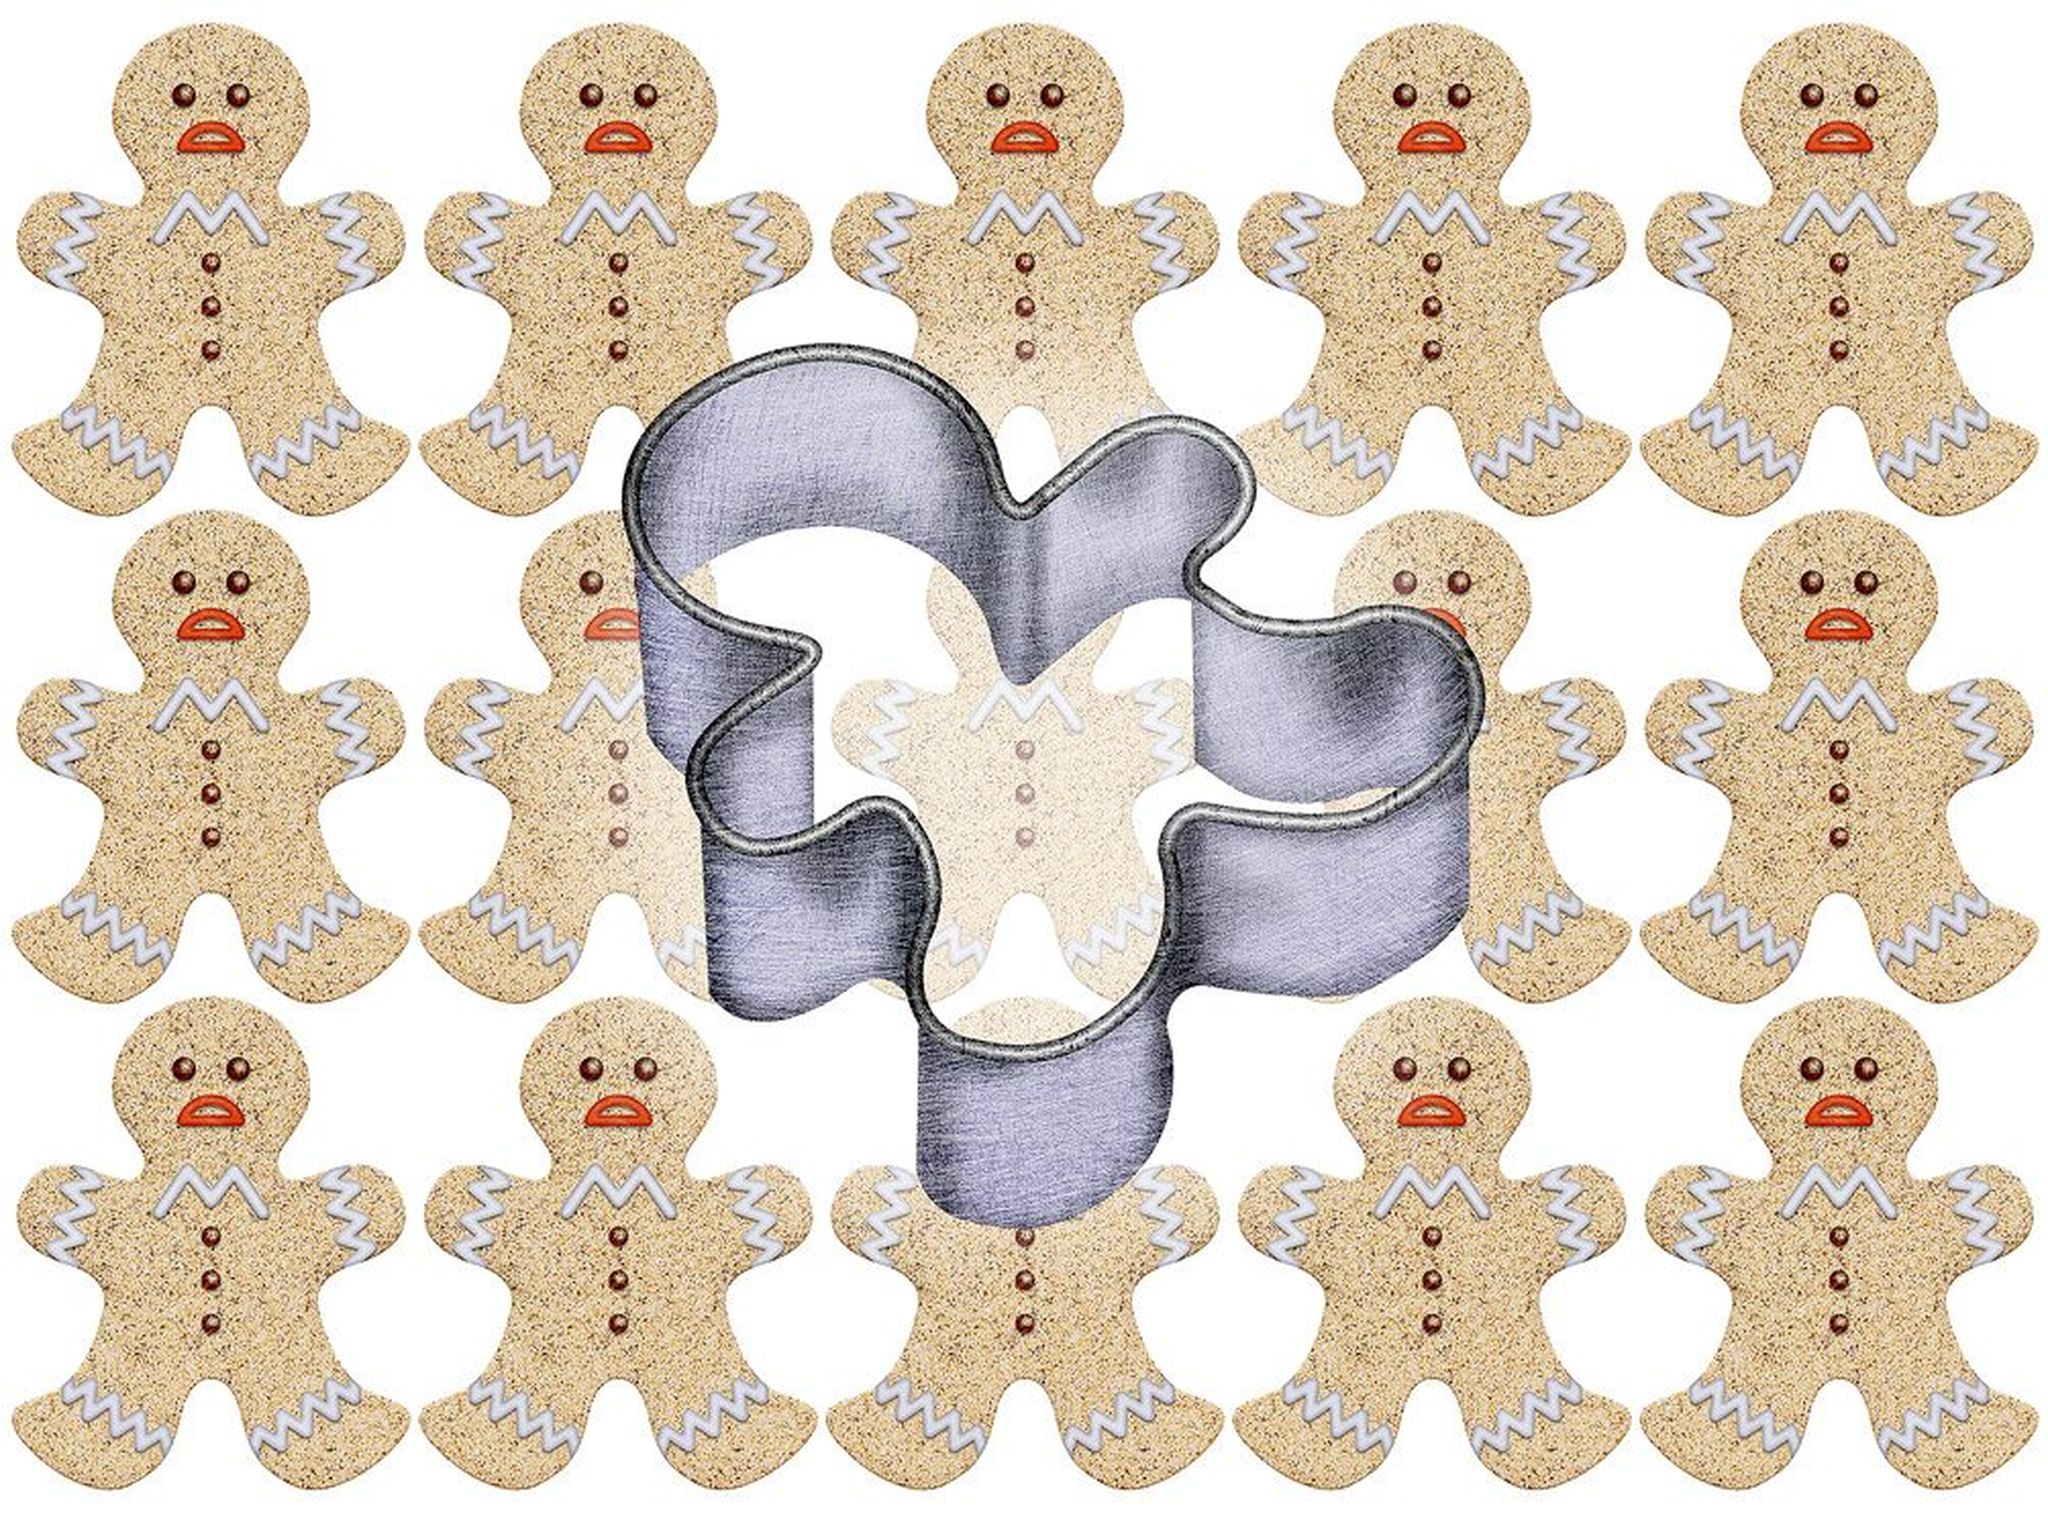 Cookie cutter gingerbread men